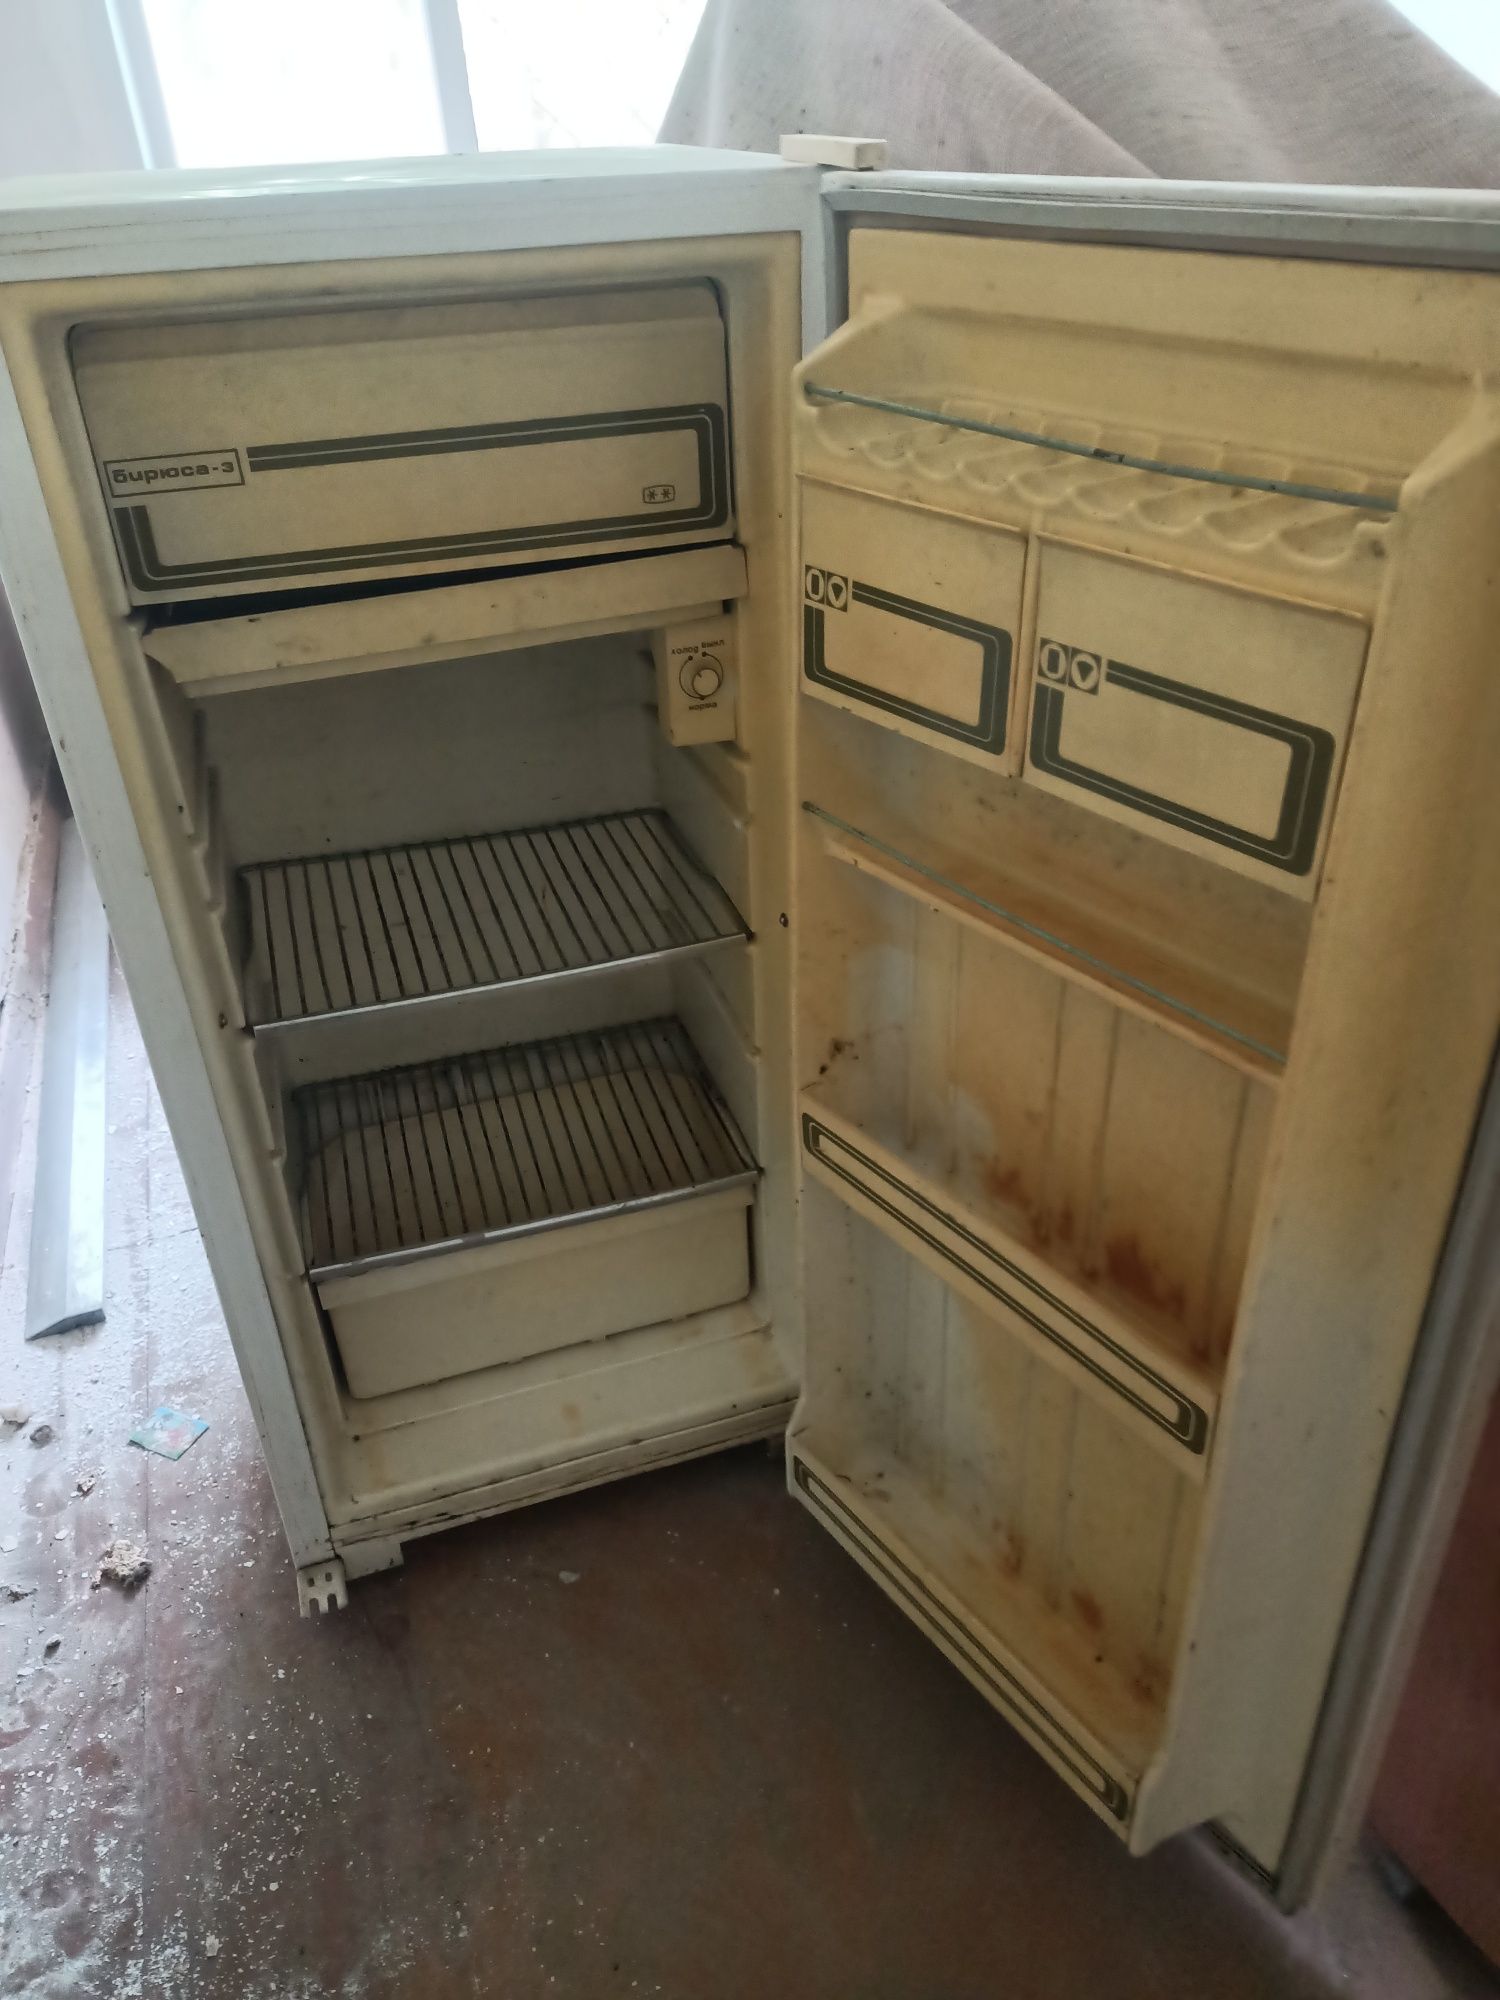 Холодильник Бирюса-3 продам в рабочем состоянии 10000 тенге самовывоз.